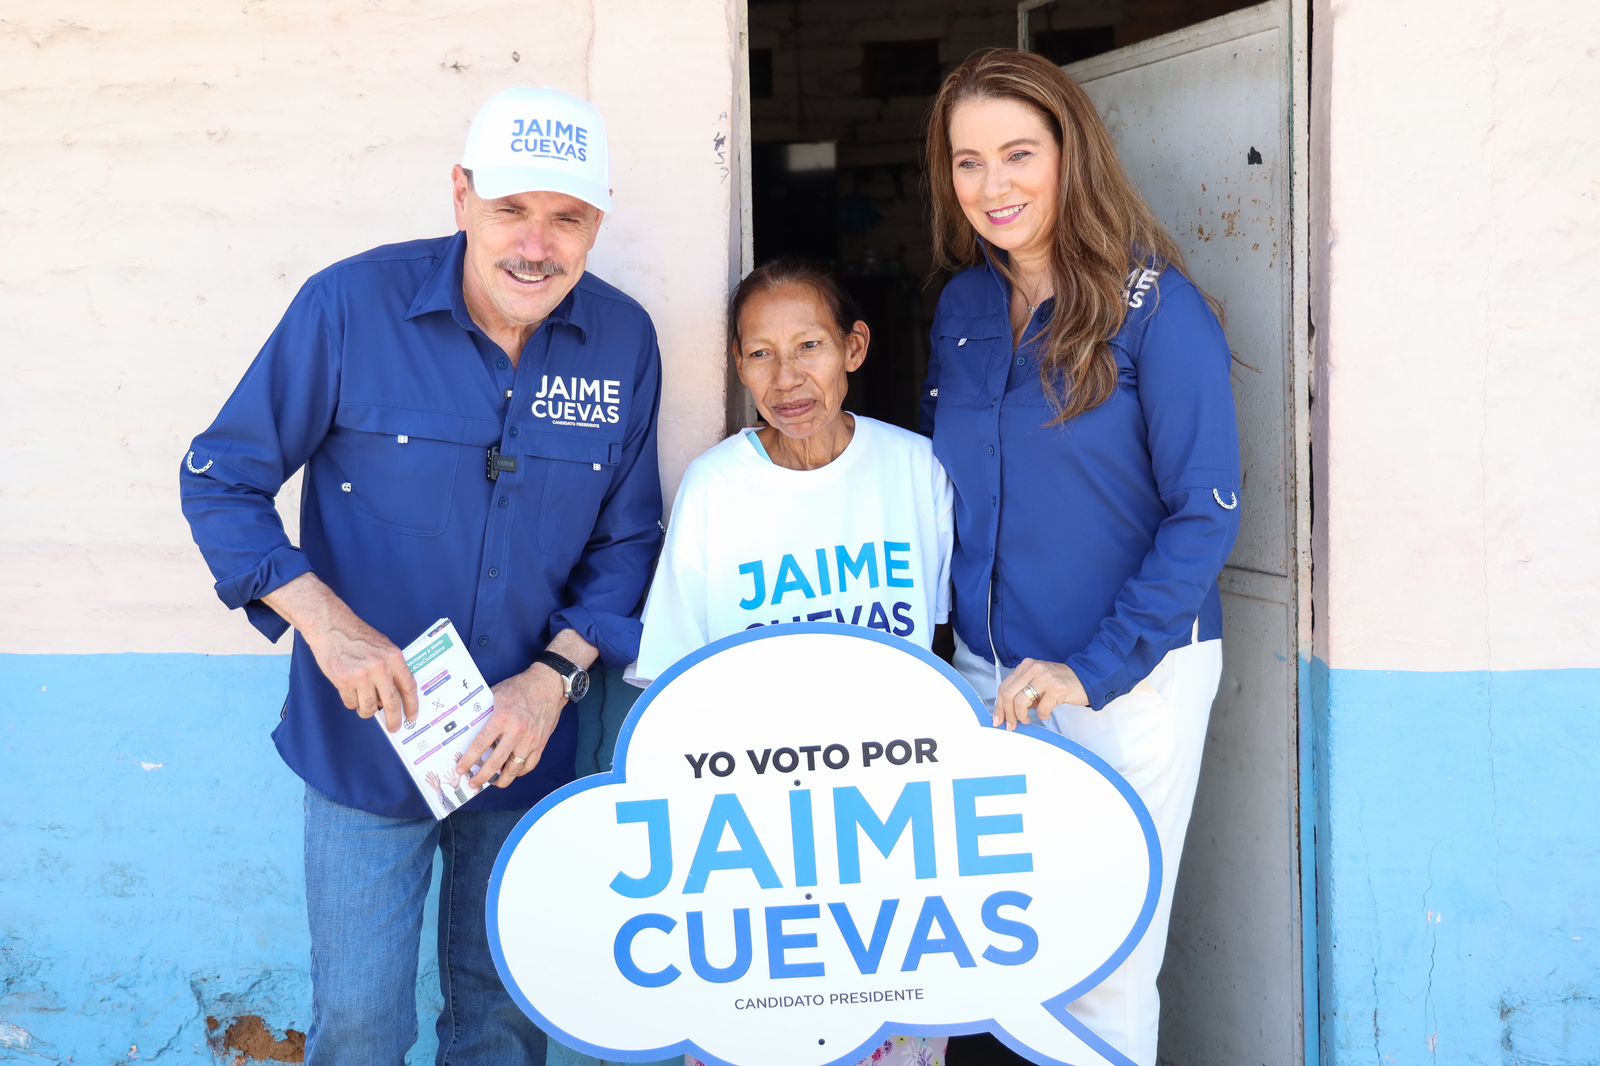 "Mi primer compromiso es continuar lo bien hecho”: Jaime Cuevas en San José del Valle